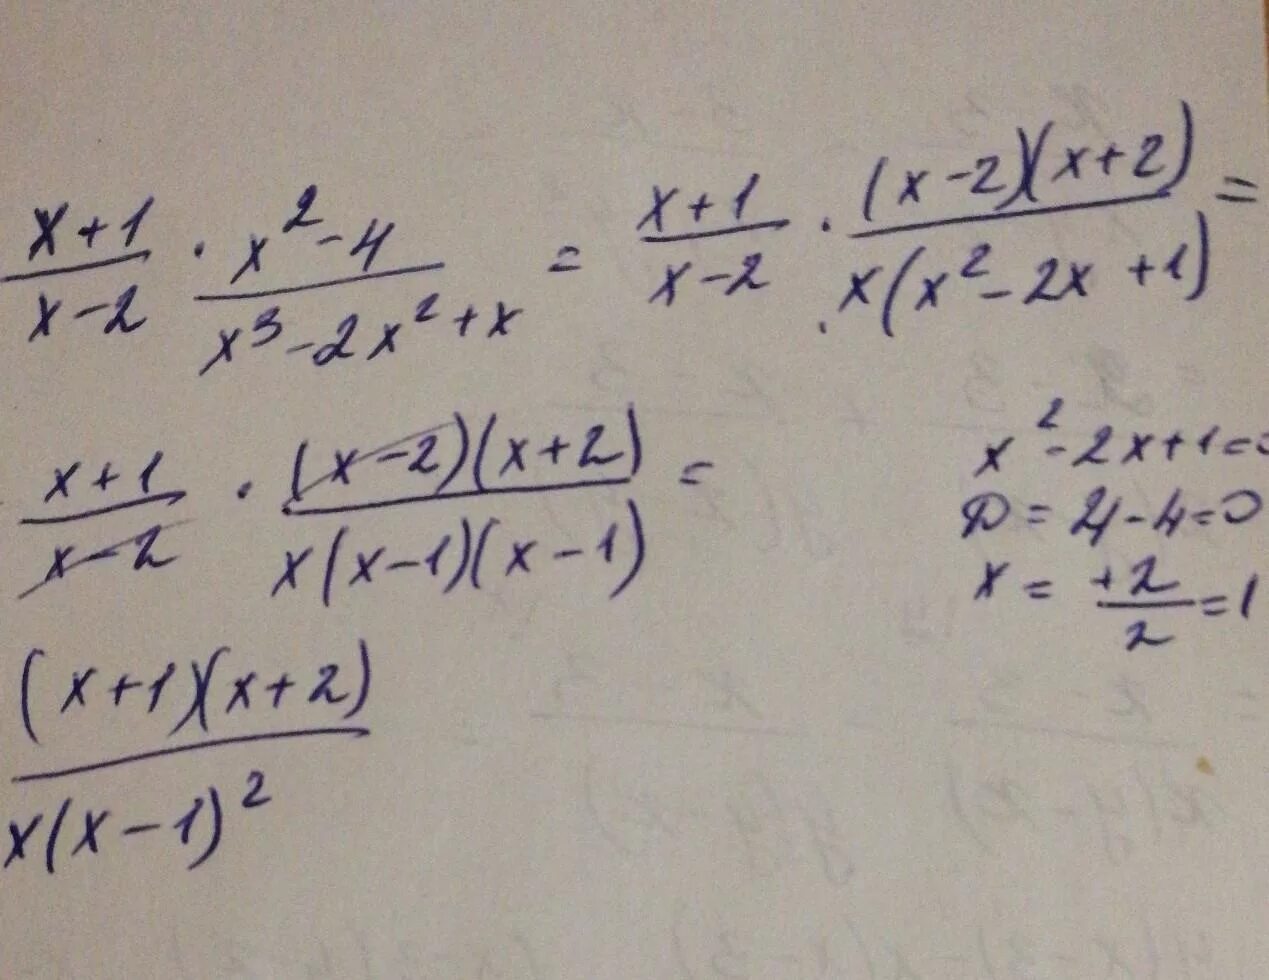 Упростите выражение x2 9 x2 3x. Упростите выражение (x-1) (x 2+1) +(3-x) (9+3x+x 2). Упростите выражение x2/x2-1 x/x+1. X*(X^2+X)+(-X^2-X-1) упростите. Упростить (x+1)(x+2).